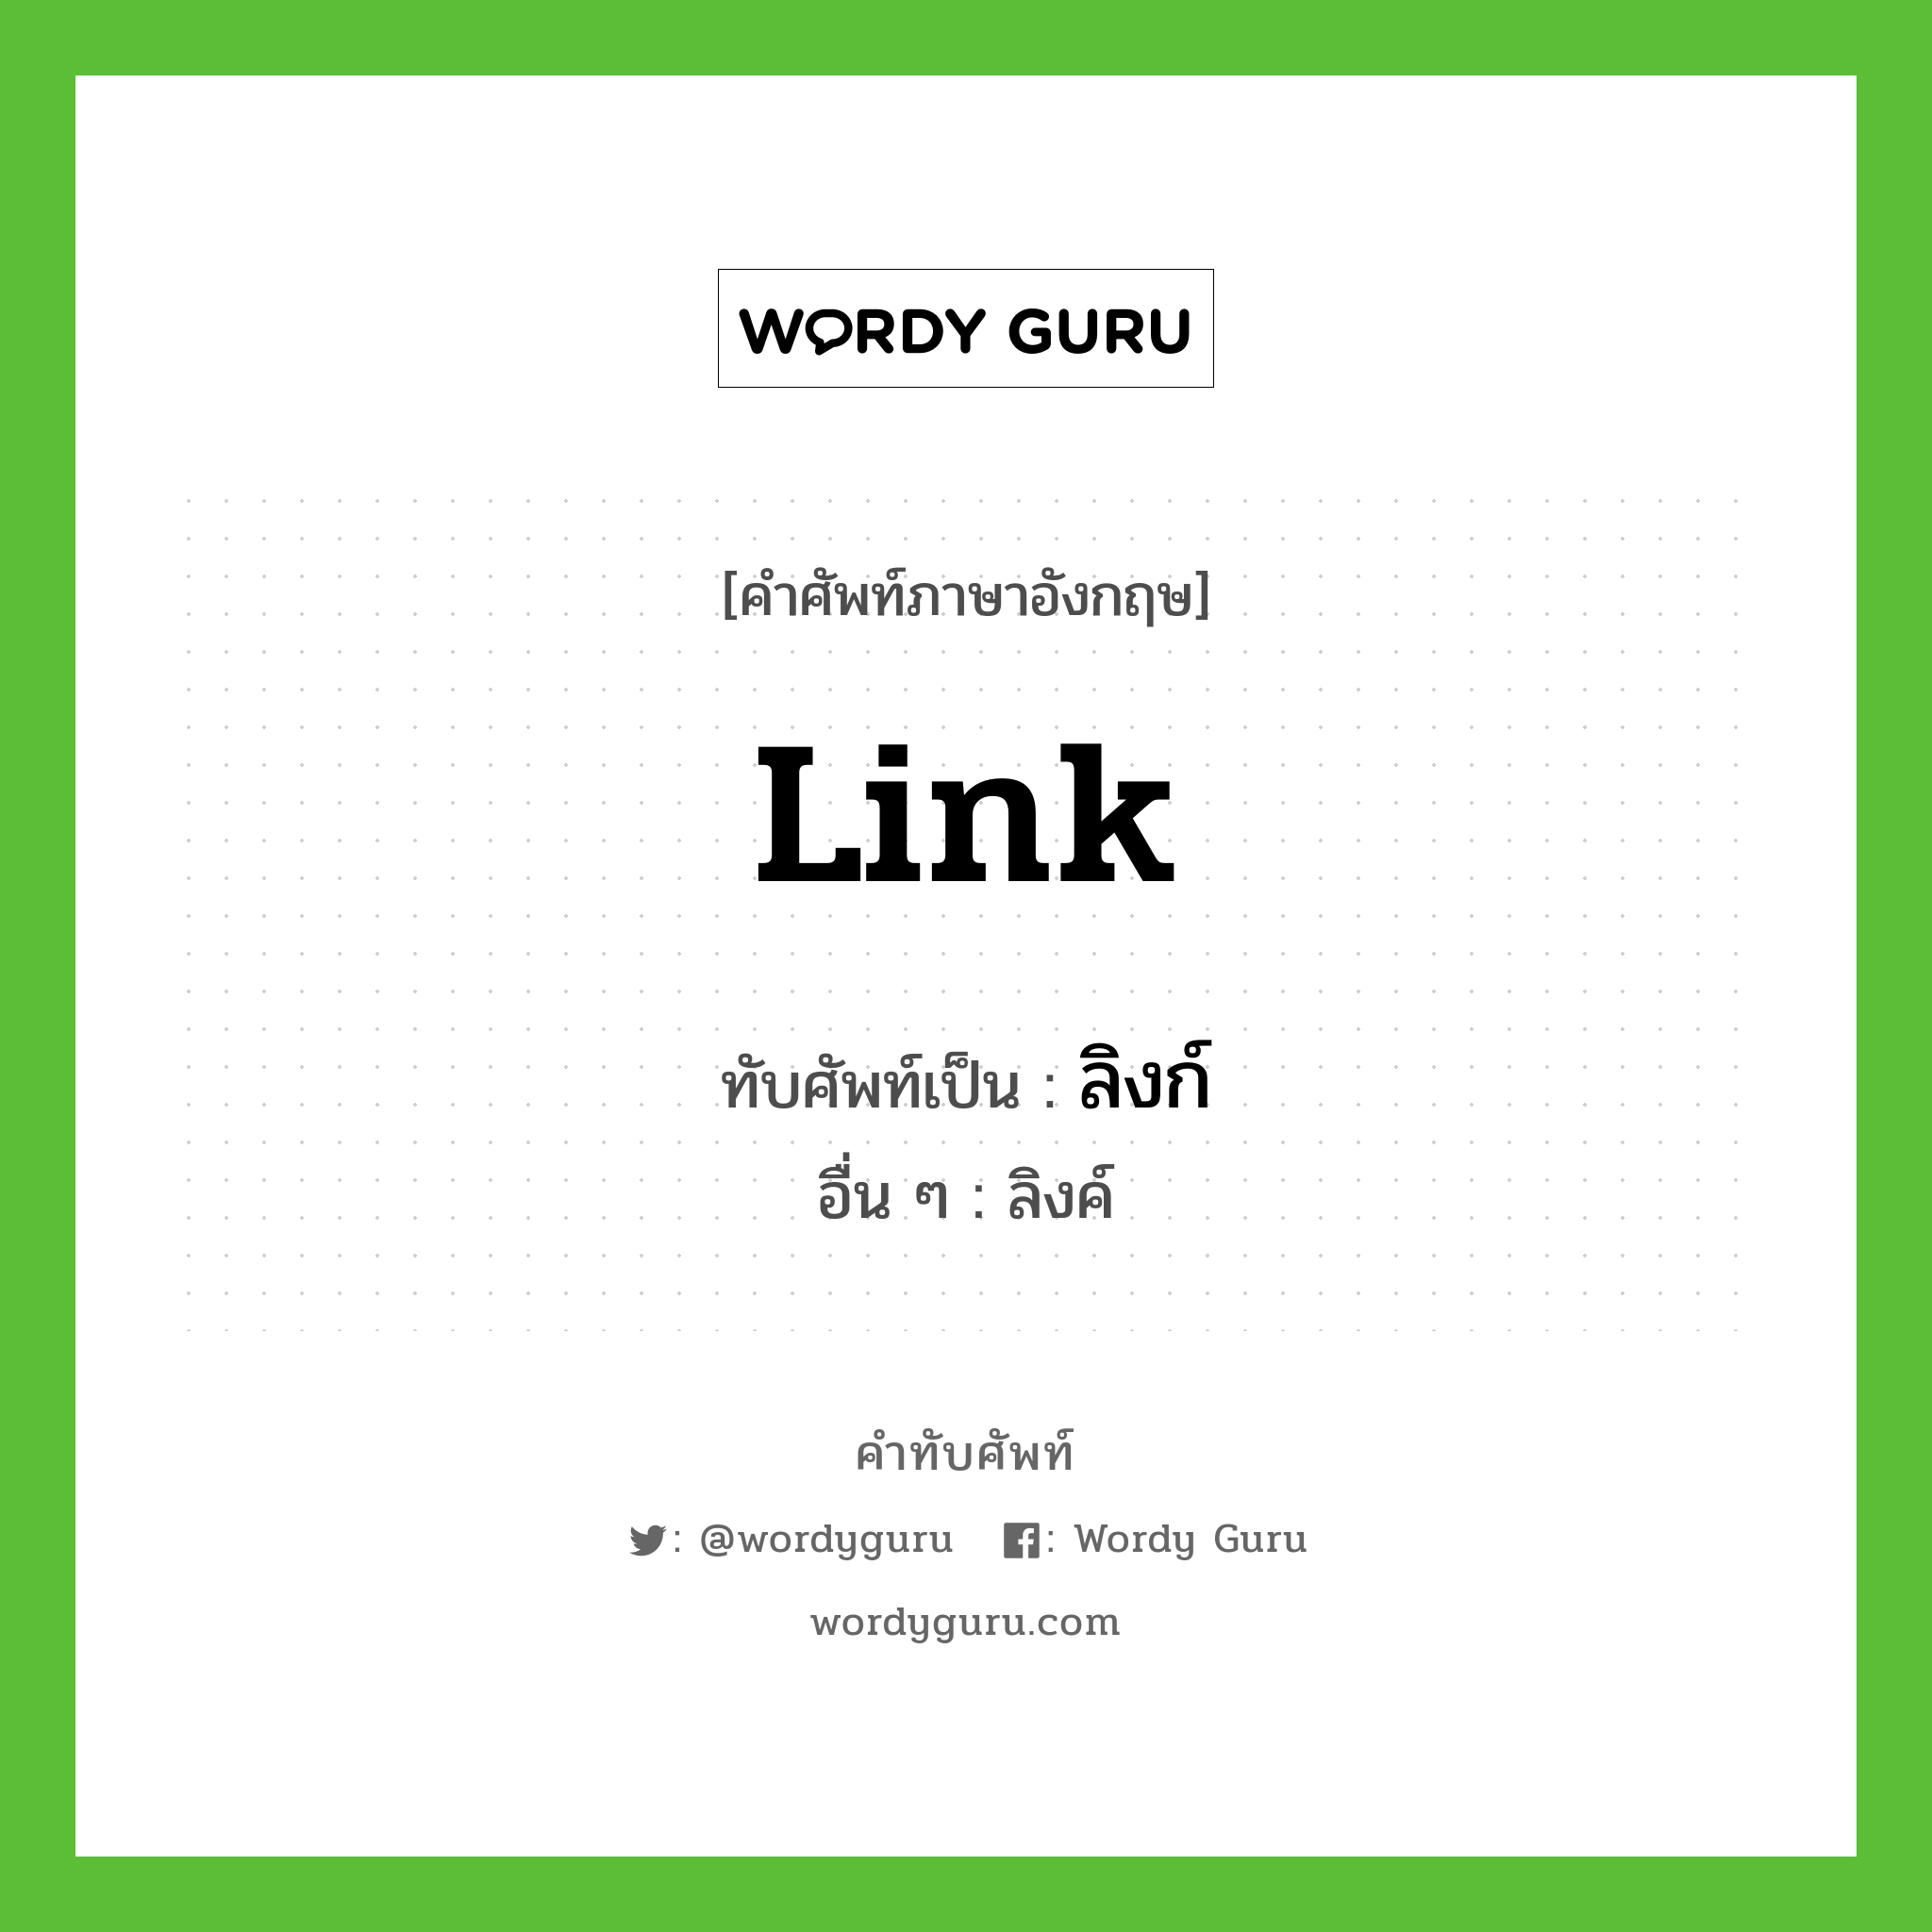 link เขียนเป็นคำไทยว่าอะไร?, คำศัพท์ภาษาอังกฤษ link ทับศัพท์เป็น ลิงก์ อื่น ๆ ลิงค์